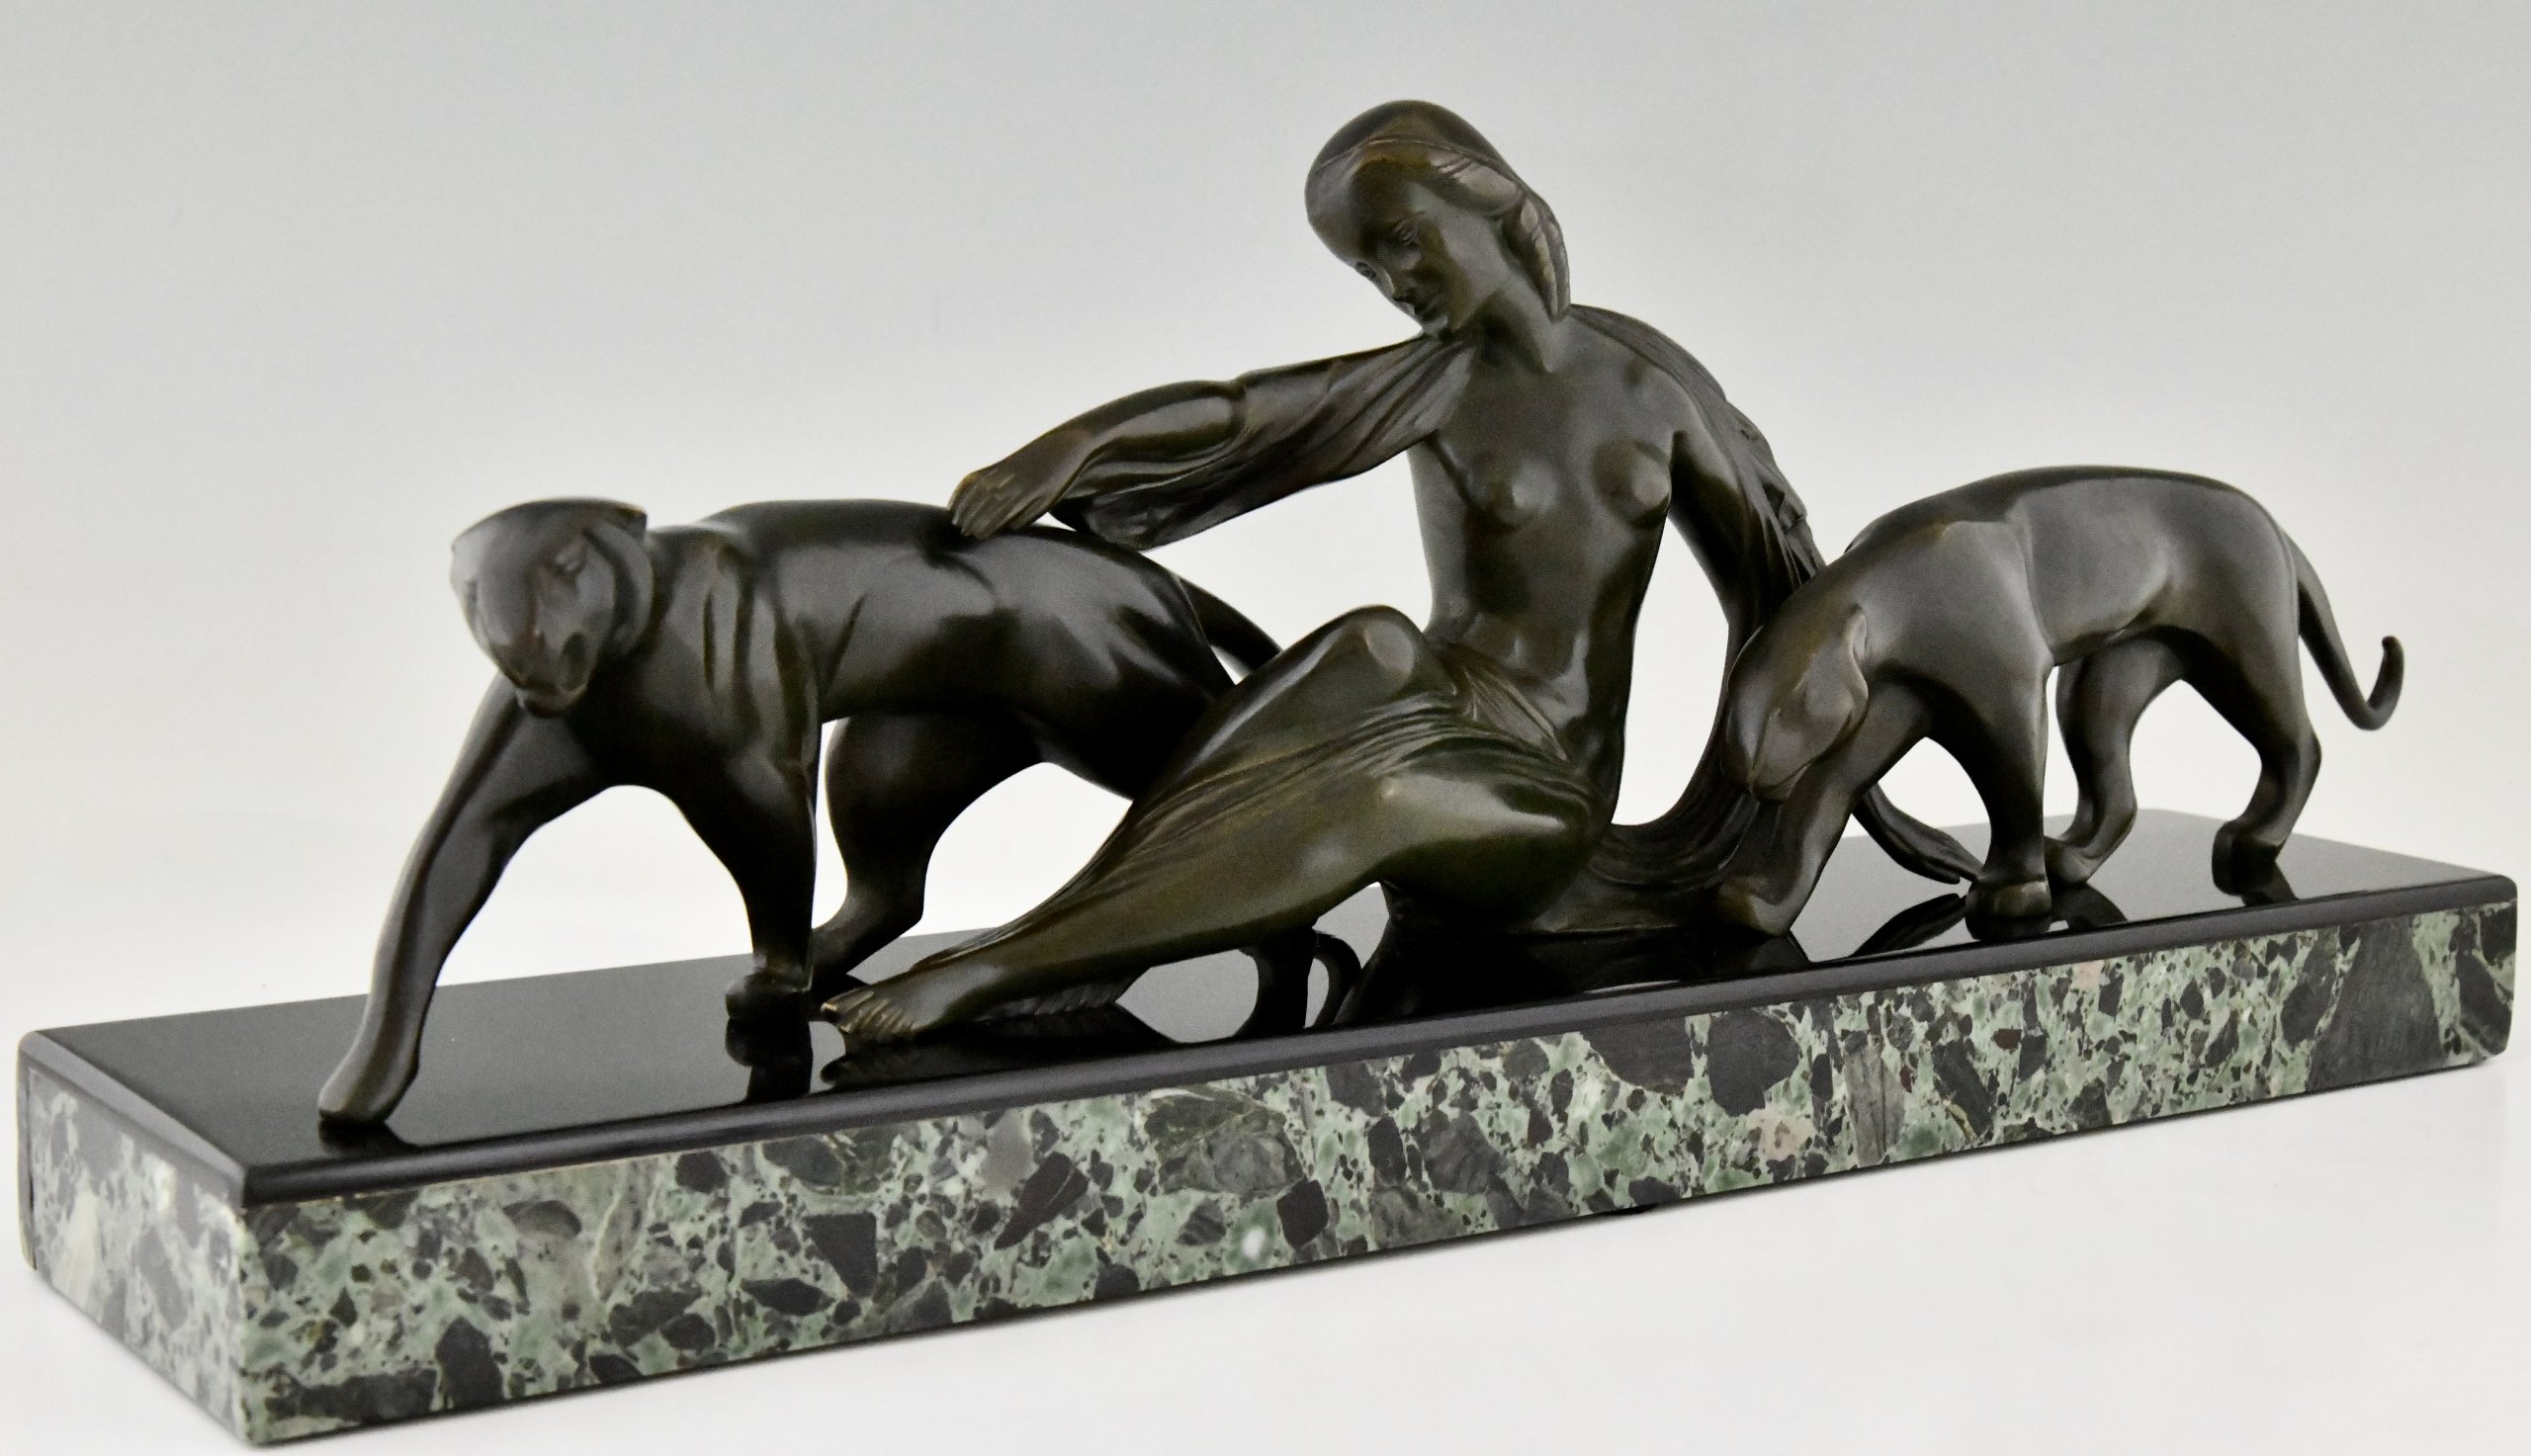 Art Deco bronzen sculptuur vrouw met panters